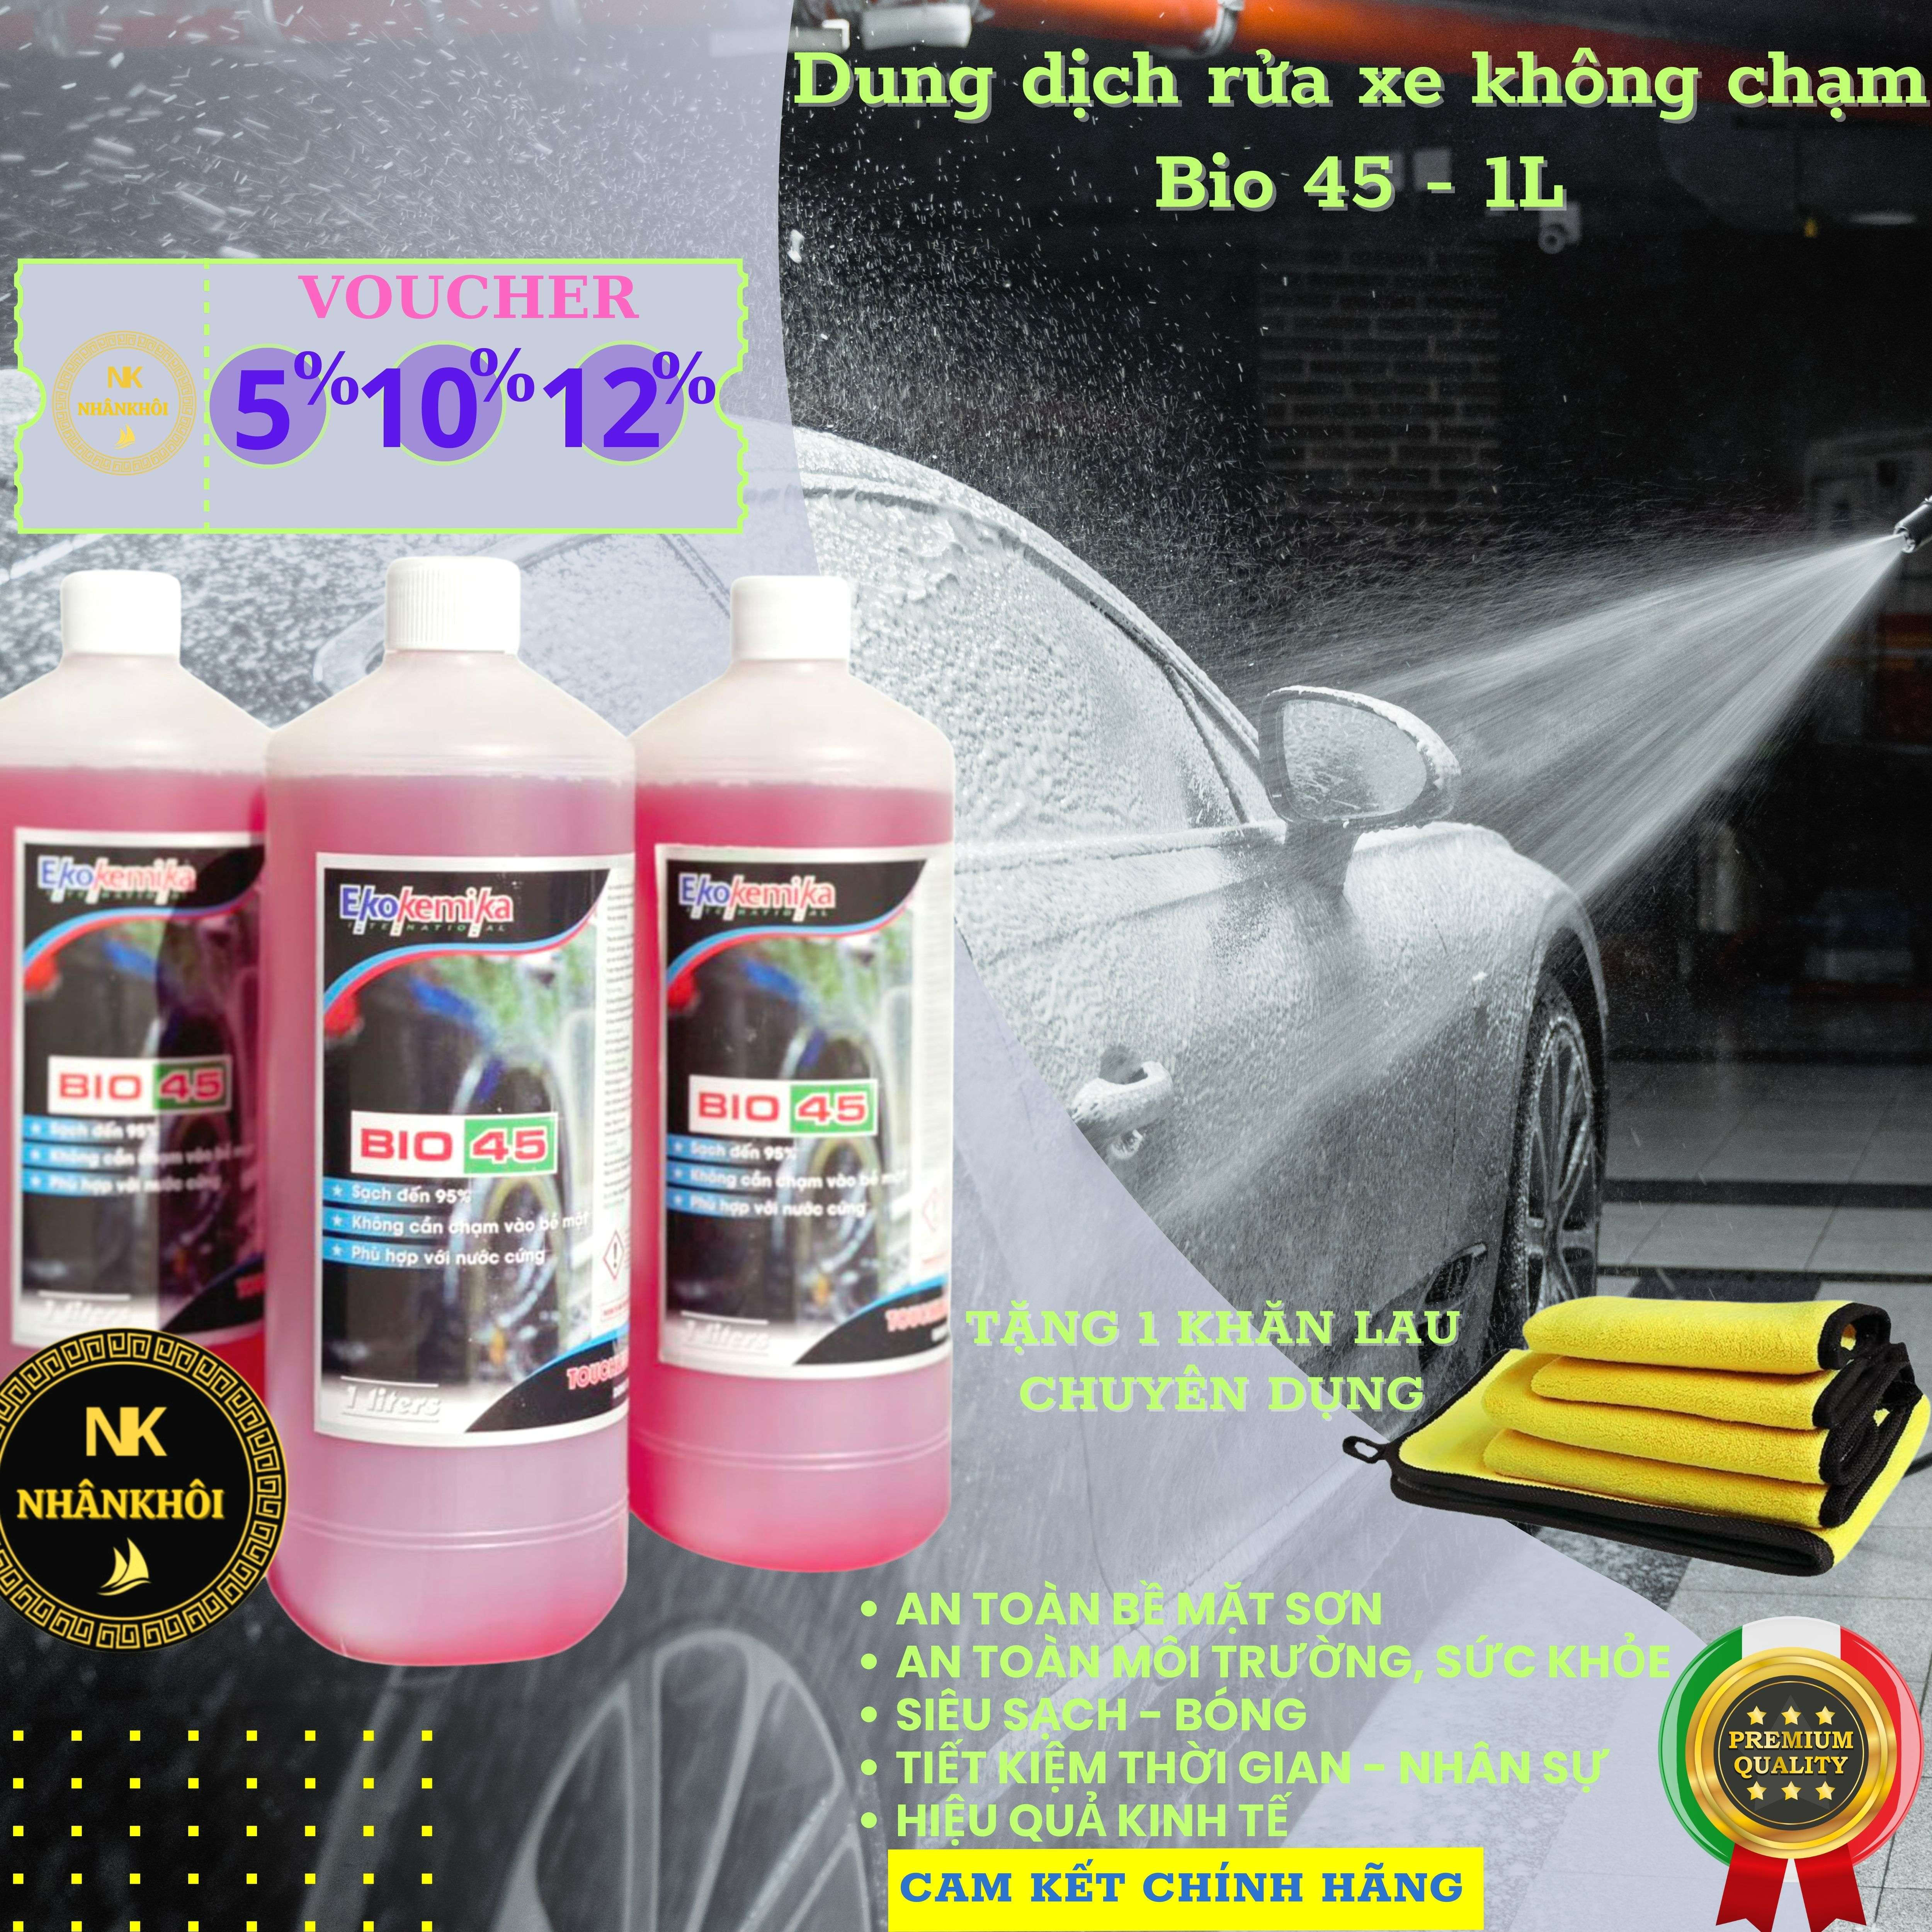 Bio 45 - 1 lít - Dung dịch rửa xe không chạm - Nước rửa xe bọt tuyết - Ekokemika